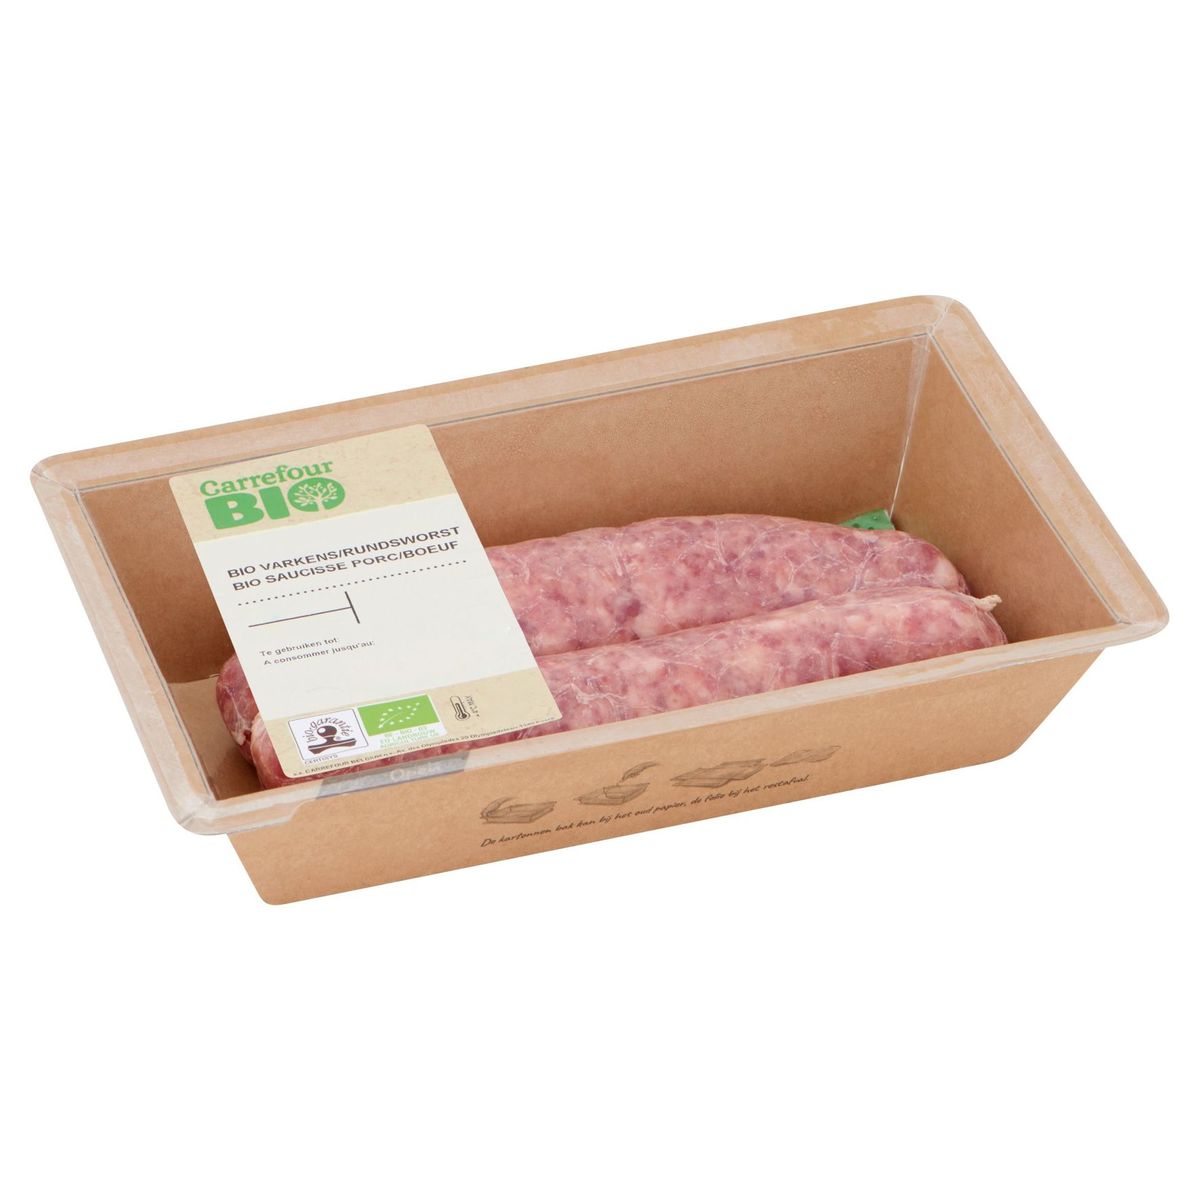 Carrefour Bio Saucisse Porc/Boeuf 0.242 kg